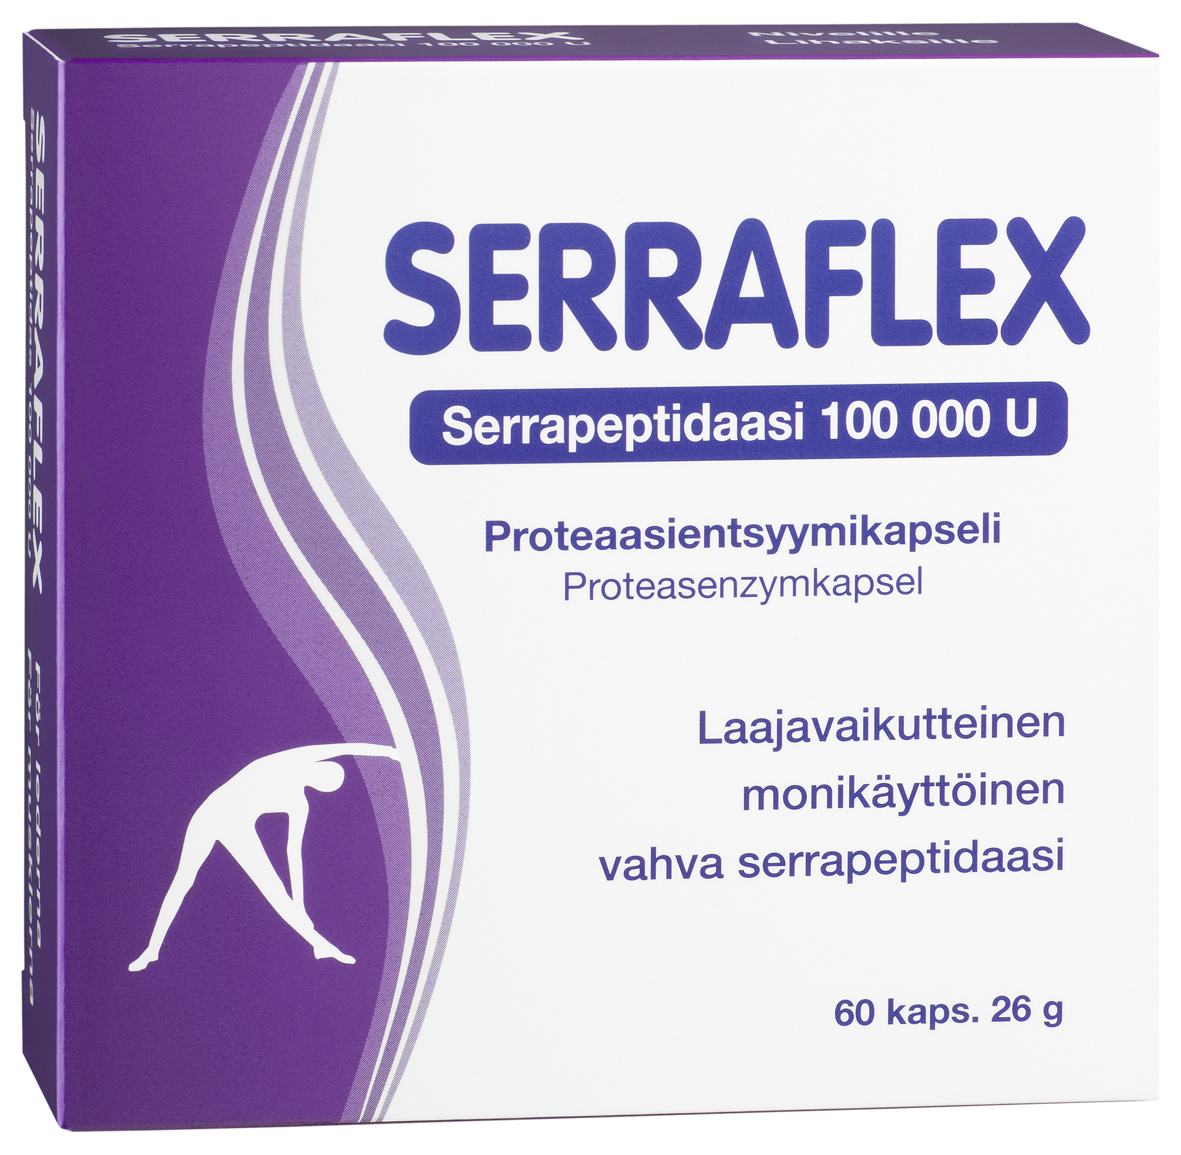 Serraflex For Joints, Muscles 60 pills